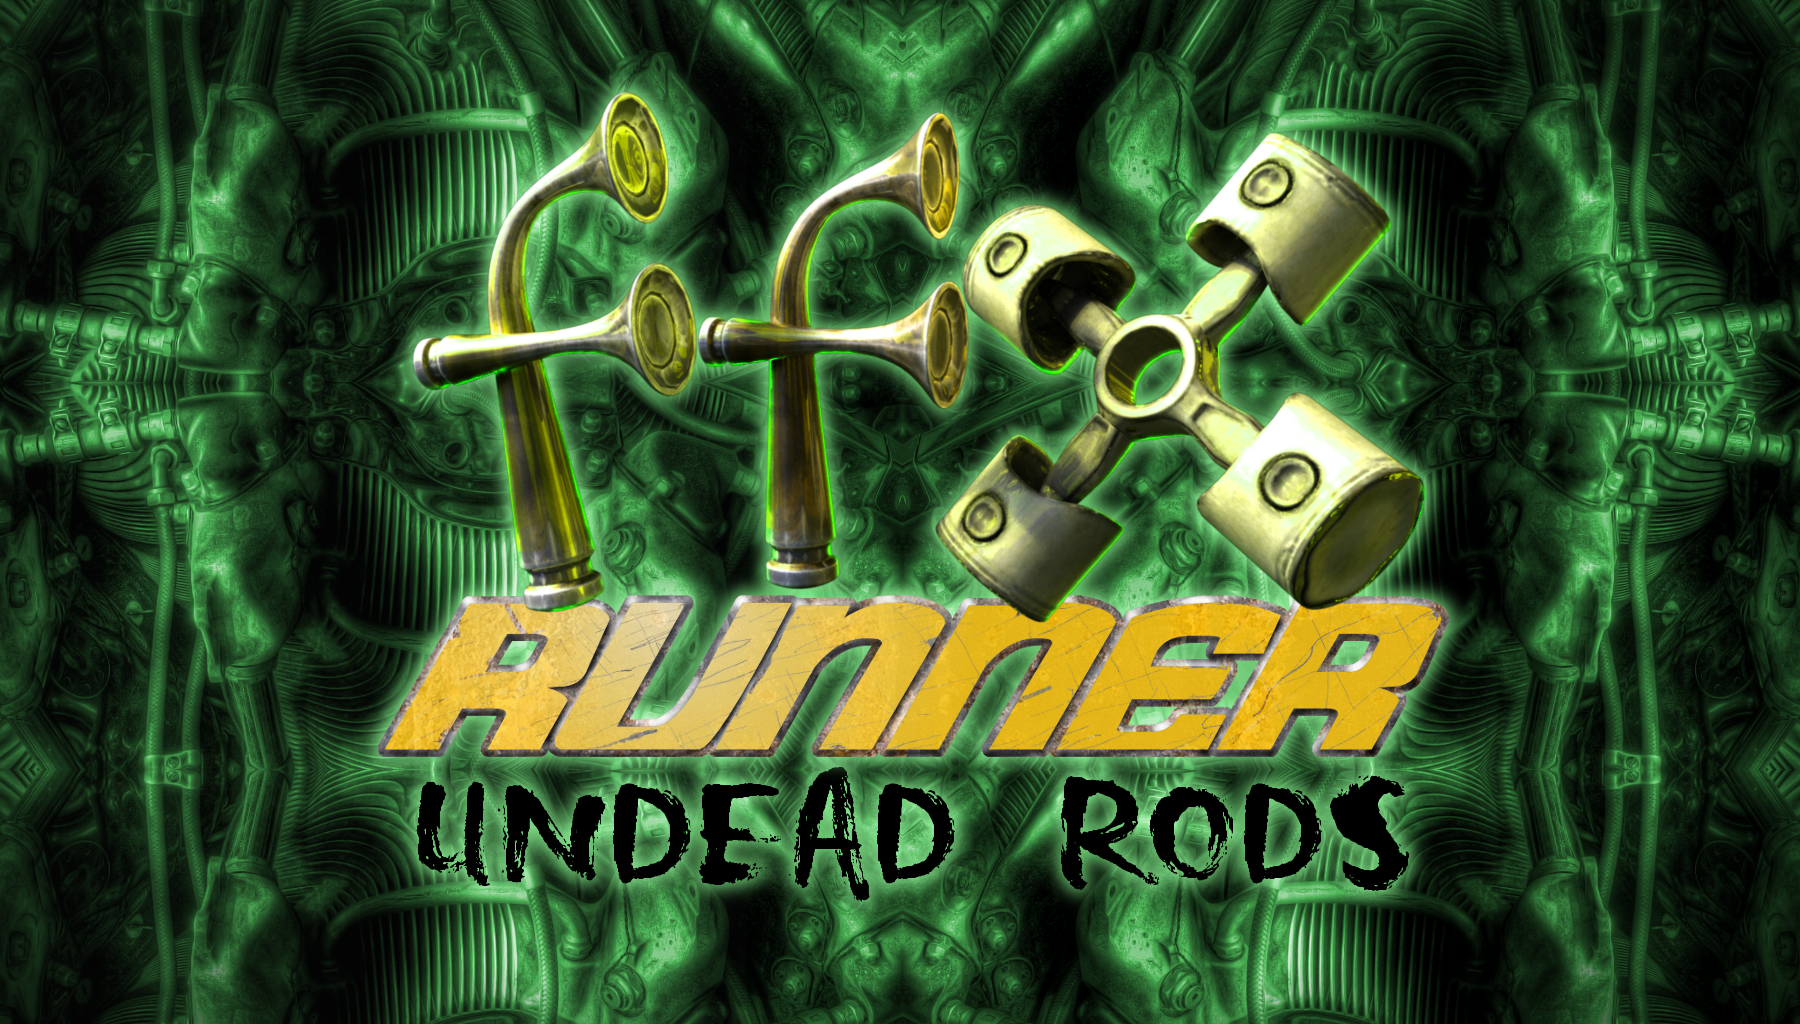 FFX Runner Undead Rods